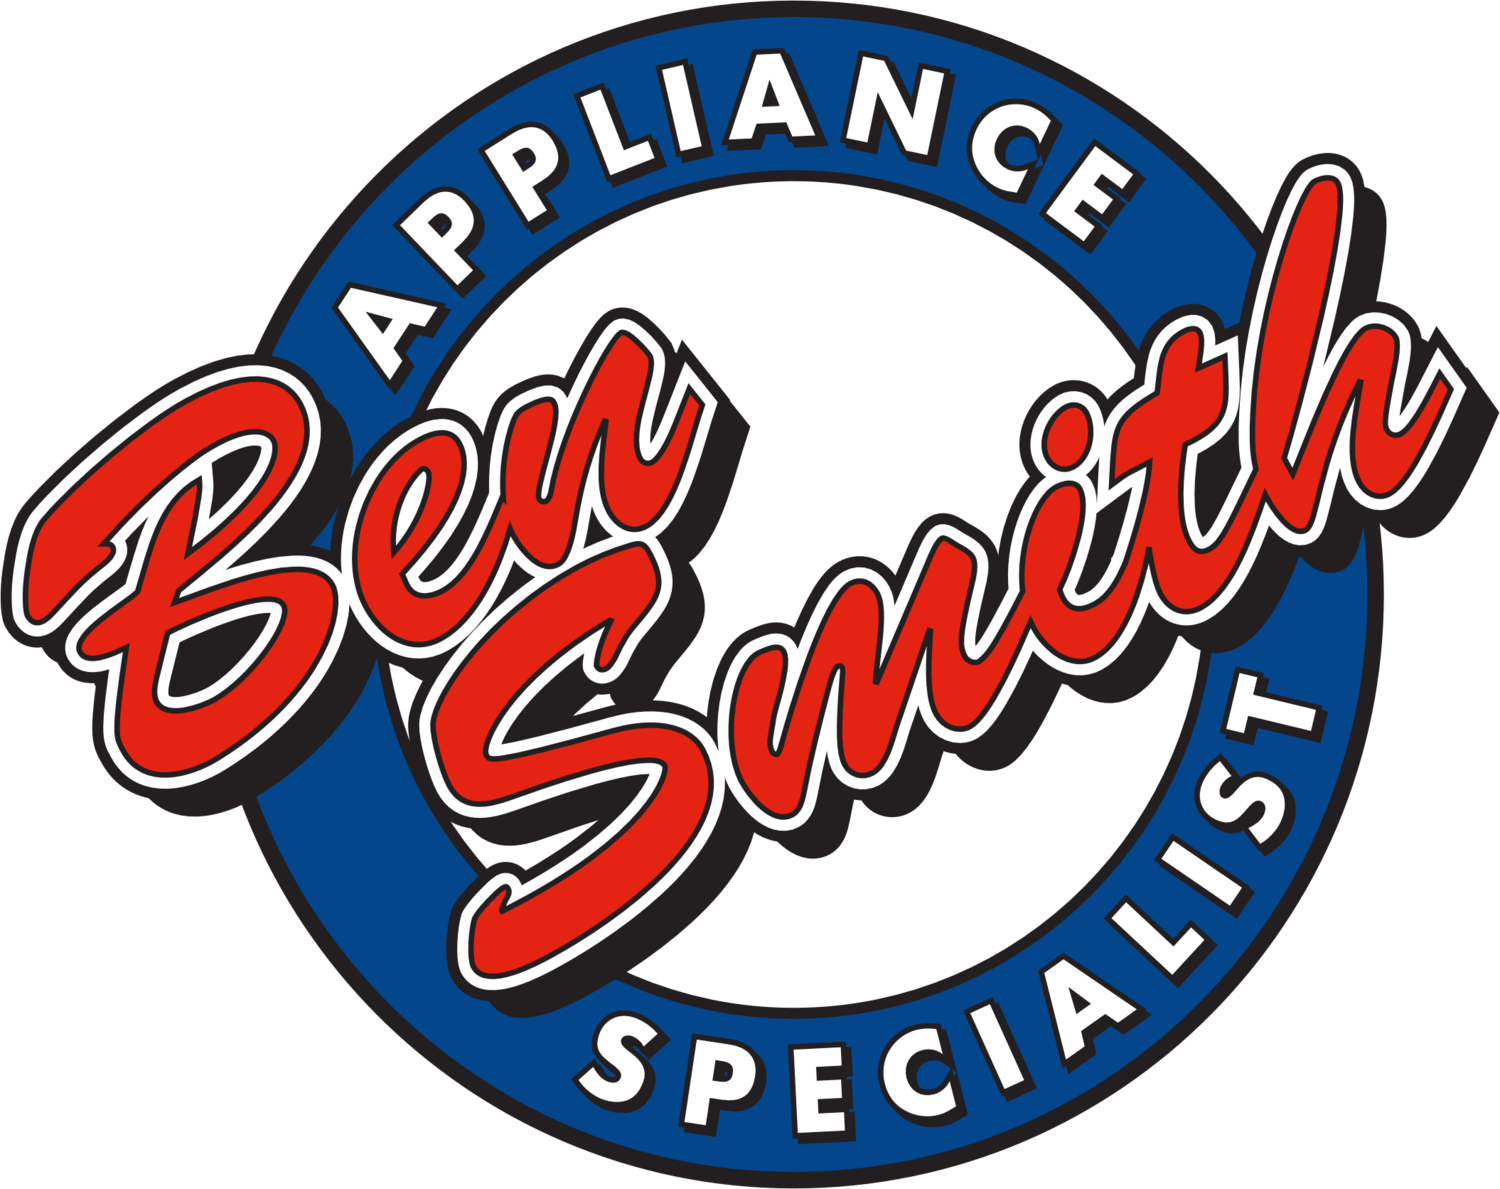 Ben Smith Appliance Specialist